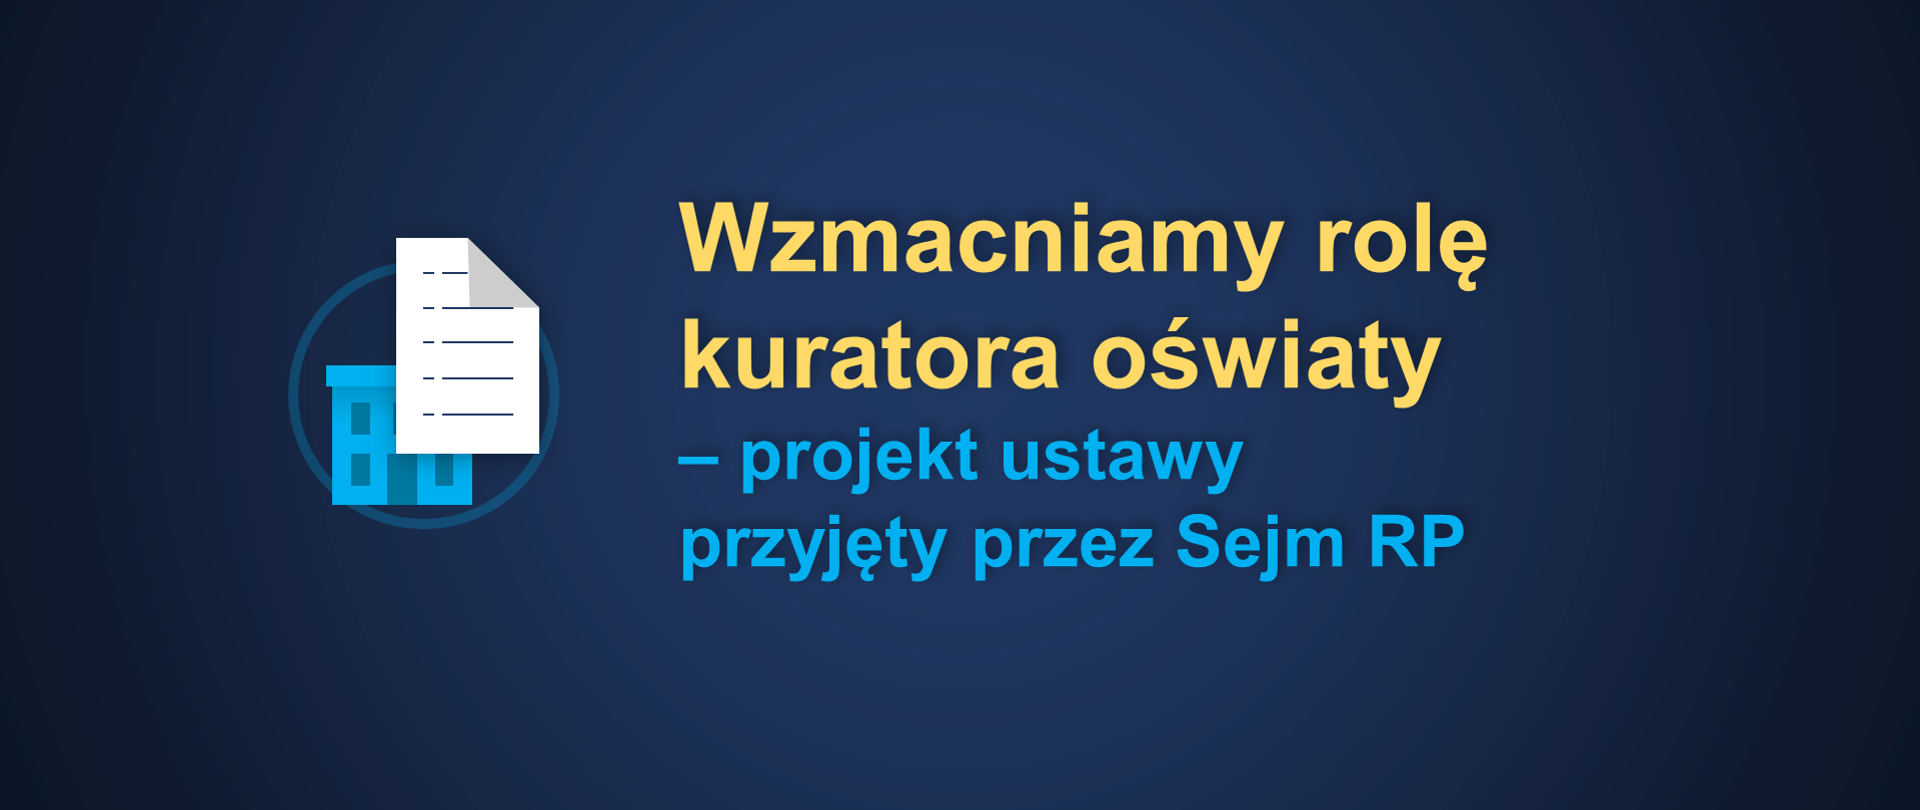 Wzmacniamy role kuratora oświaty - projekt ustawy przyjęty przez Sejm RP, grafika